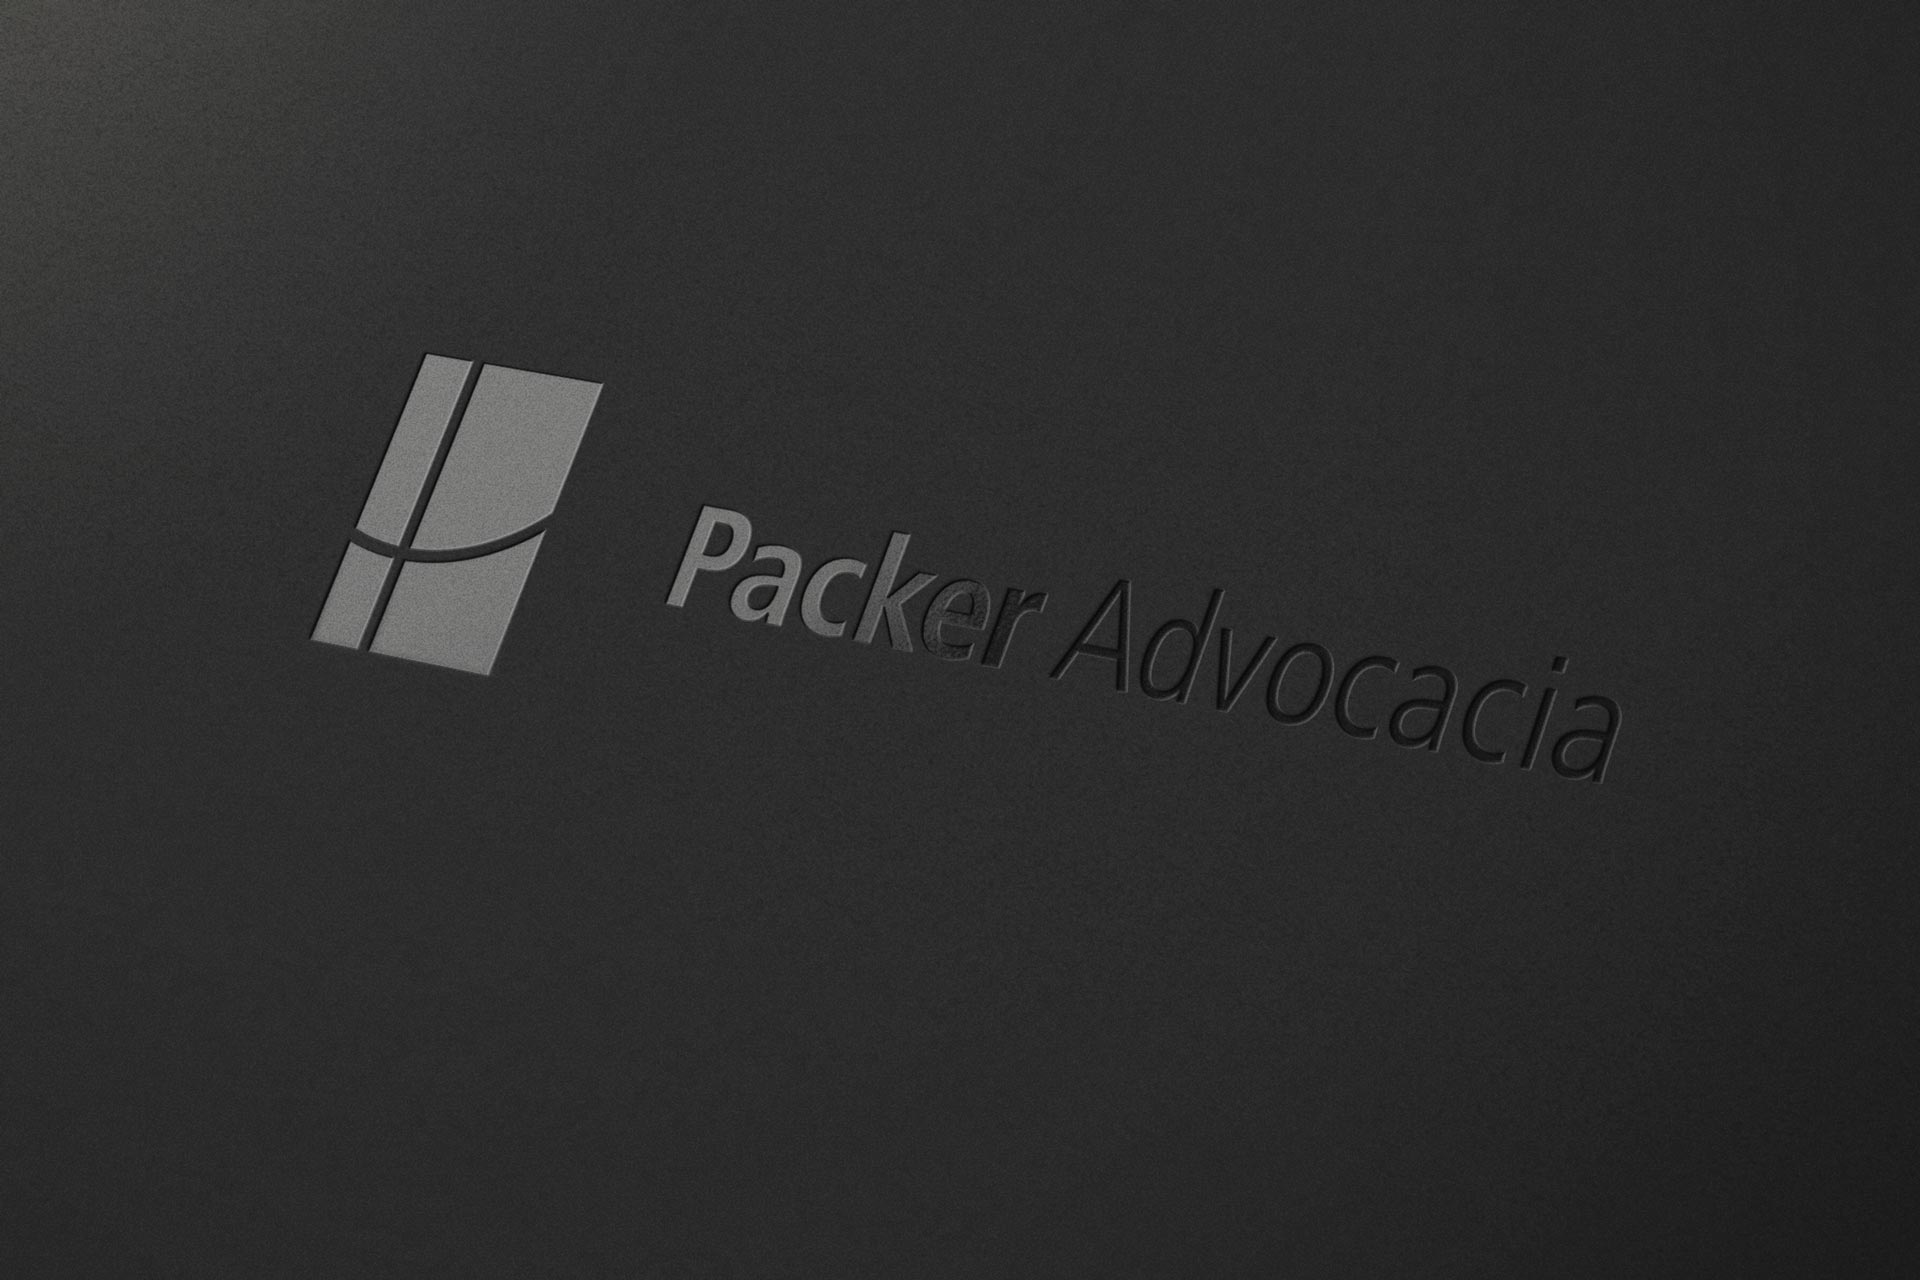 detalhe logo Packer Advocacia